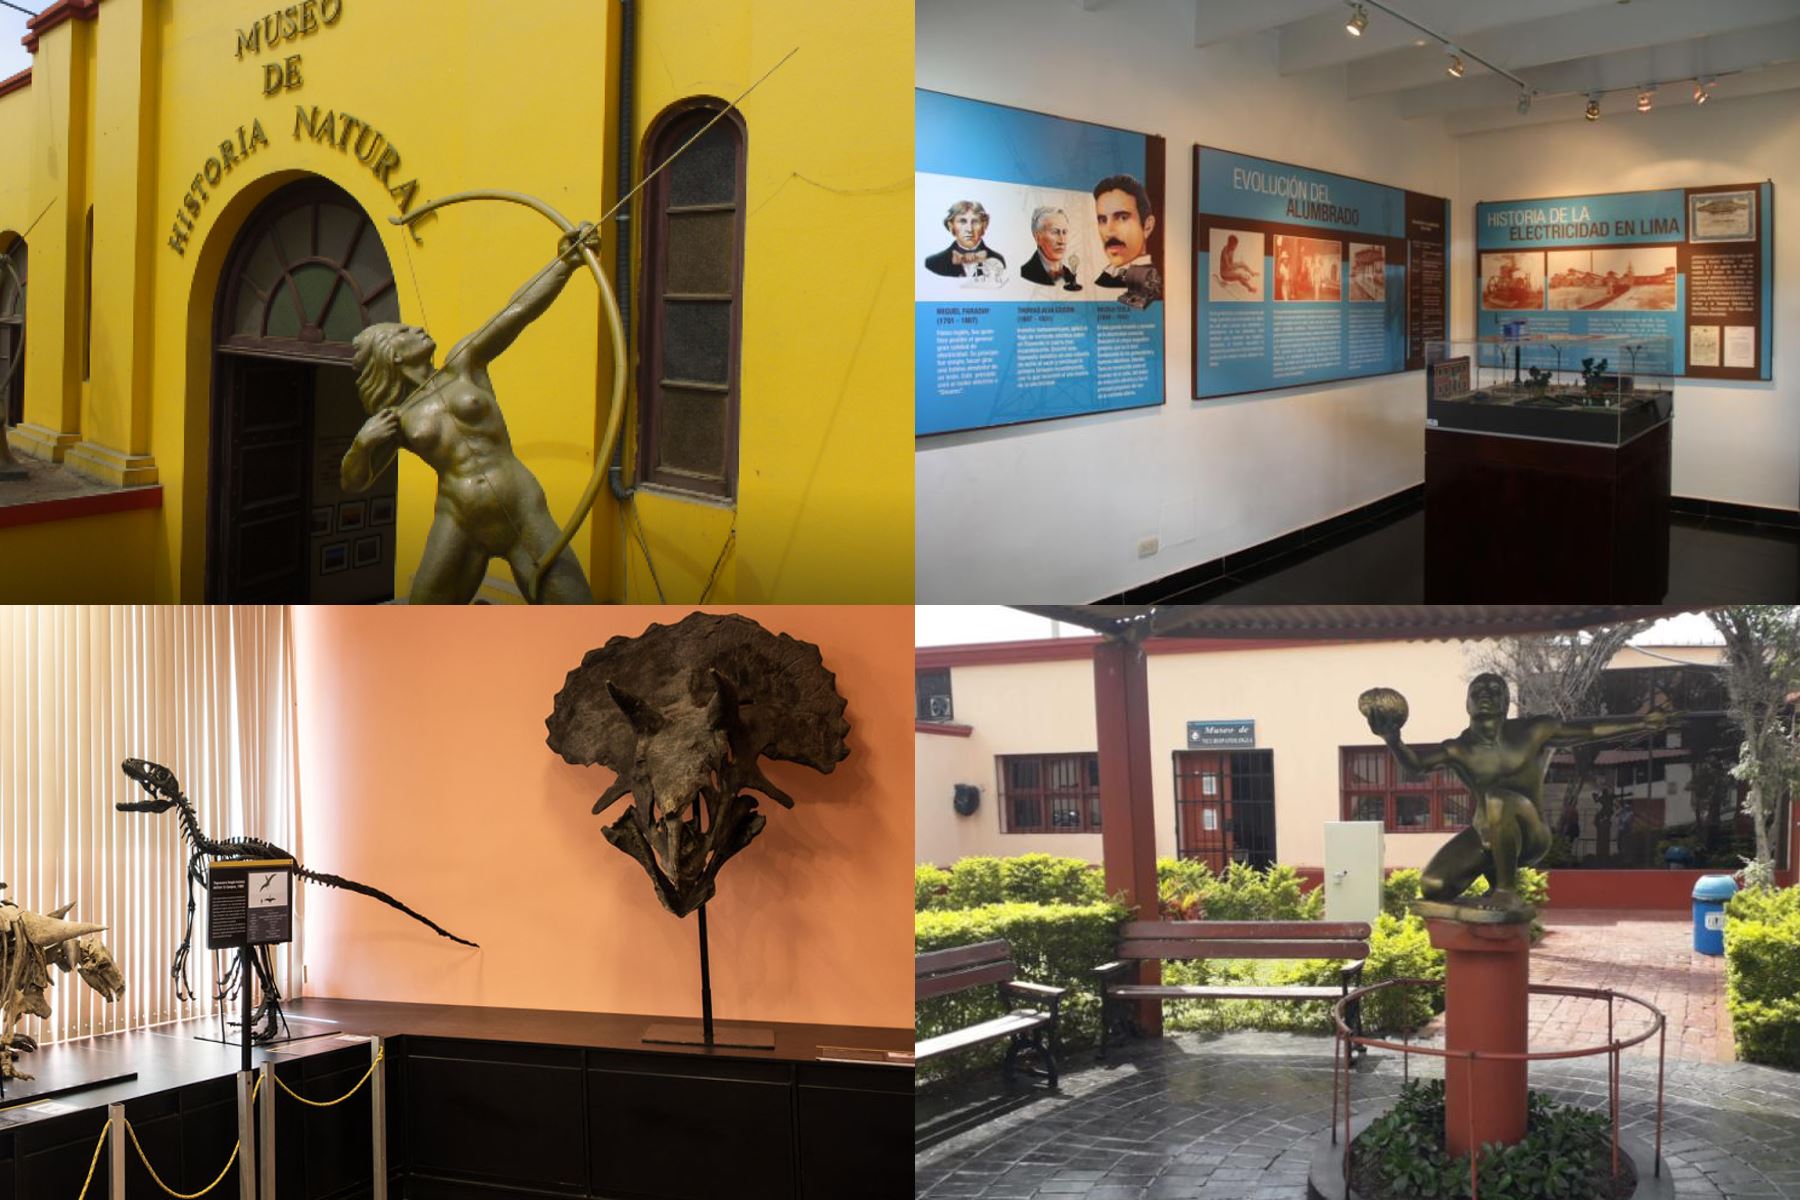 El Ministerio de Cultura dio a conocer recientemente cuáles son los museos en Lima y en otras regiones que estarán disponibles desde el 28 al 31 de marzo en horario normal.